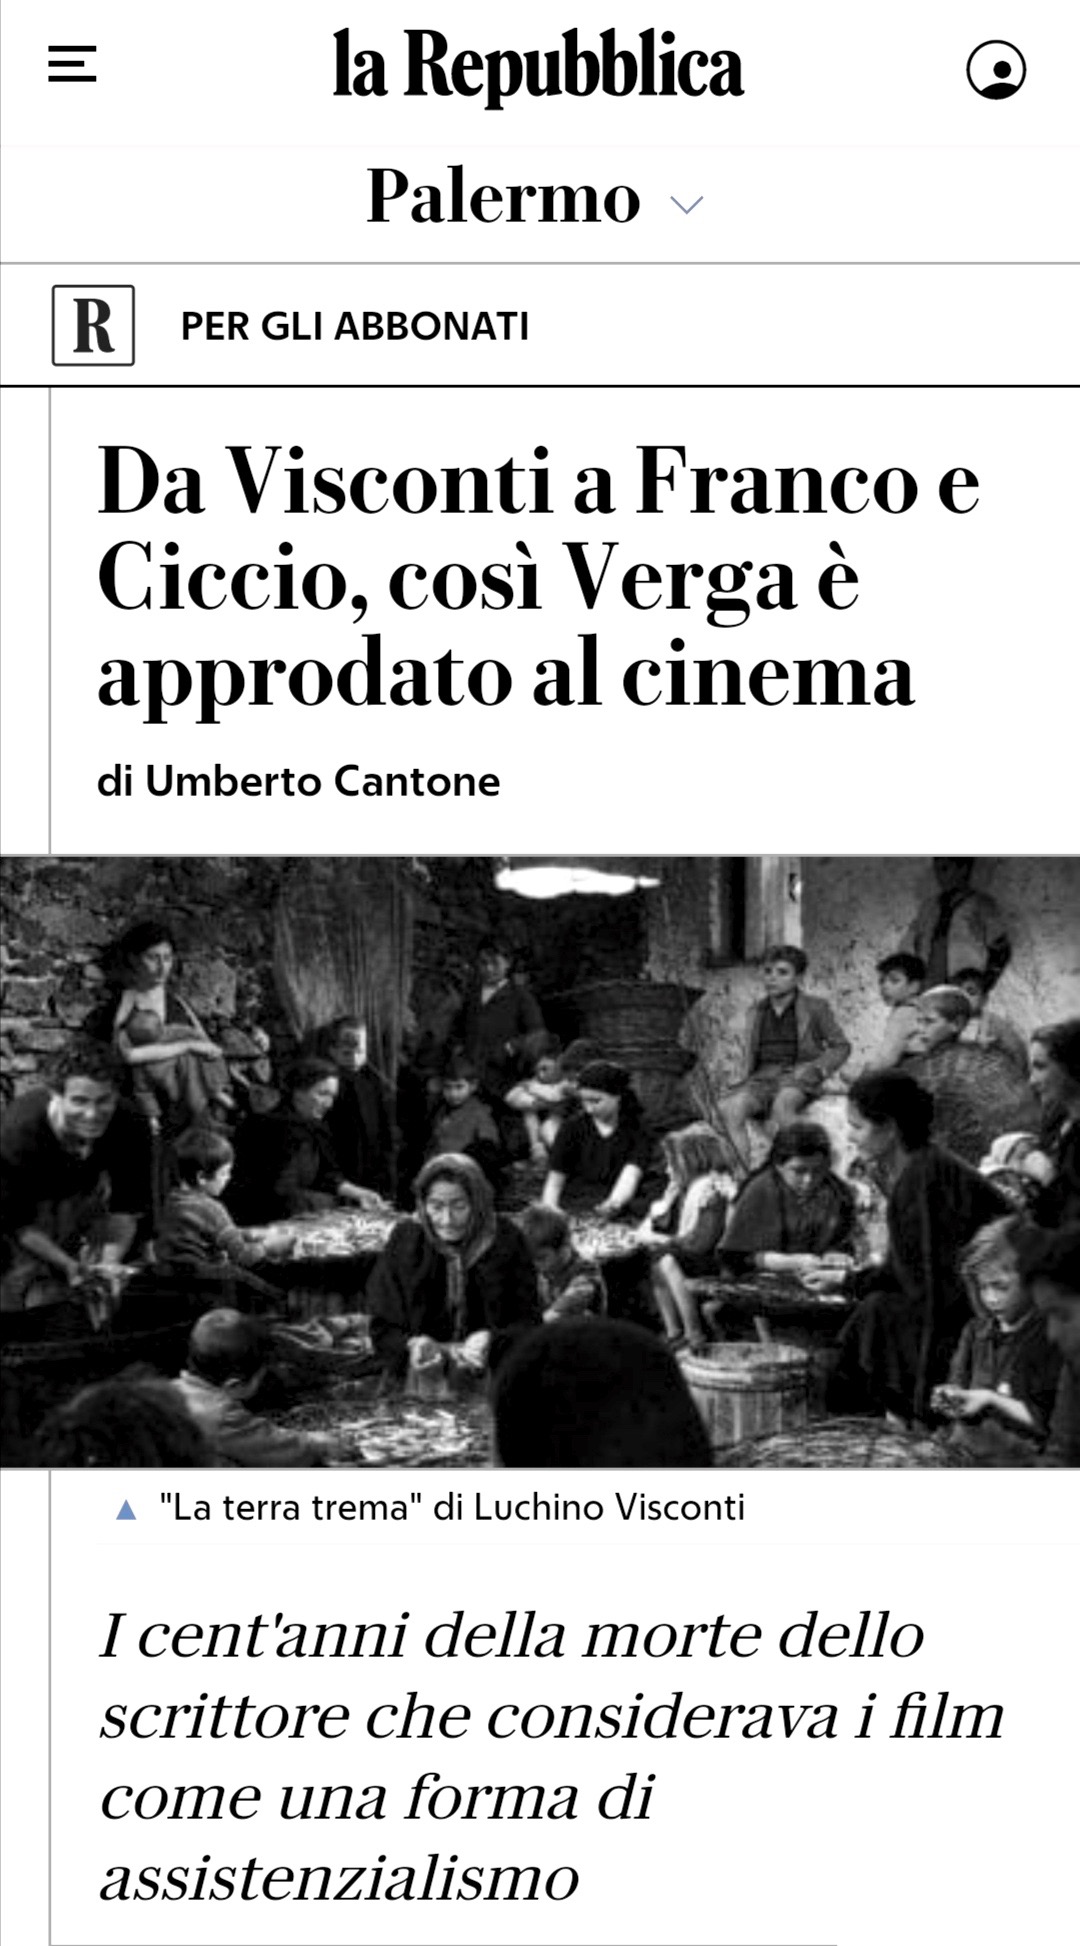 Da Visconti a Franco e Ciccio, così Verga è approdato al cinema, in “la Repubblica-Palermo”, 26 gennaio 2022